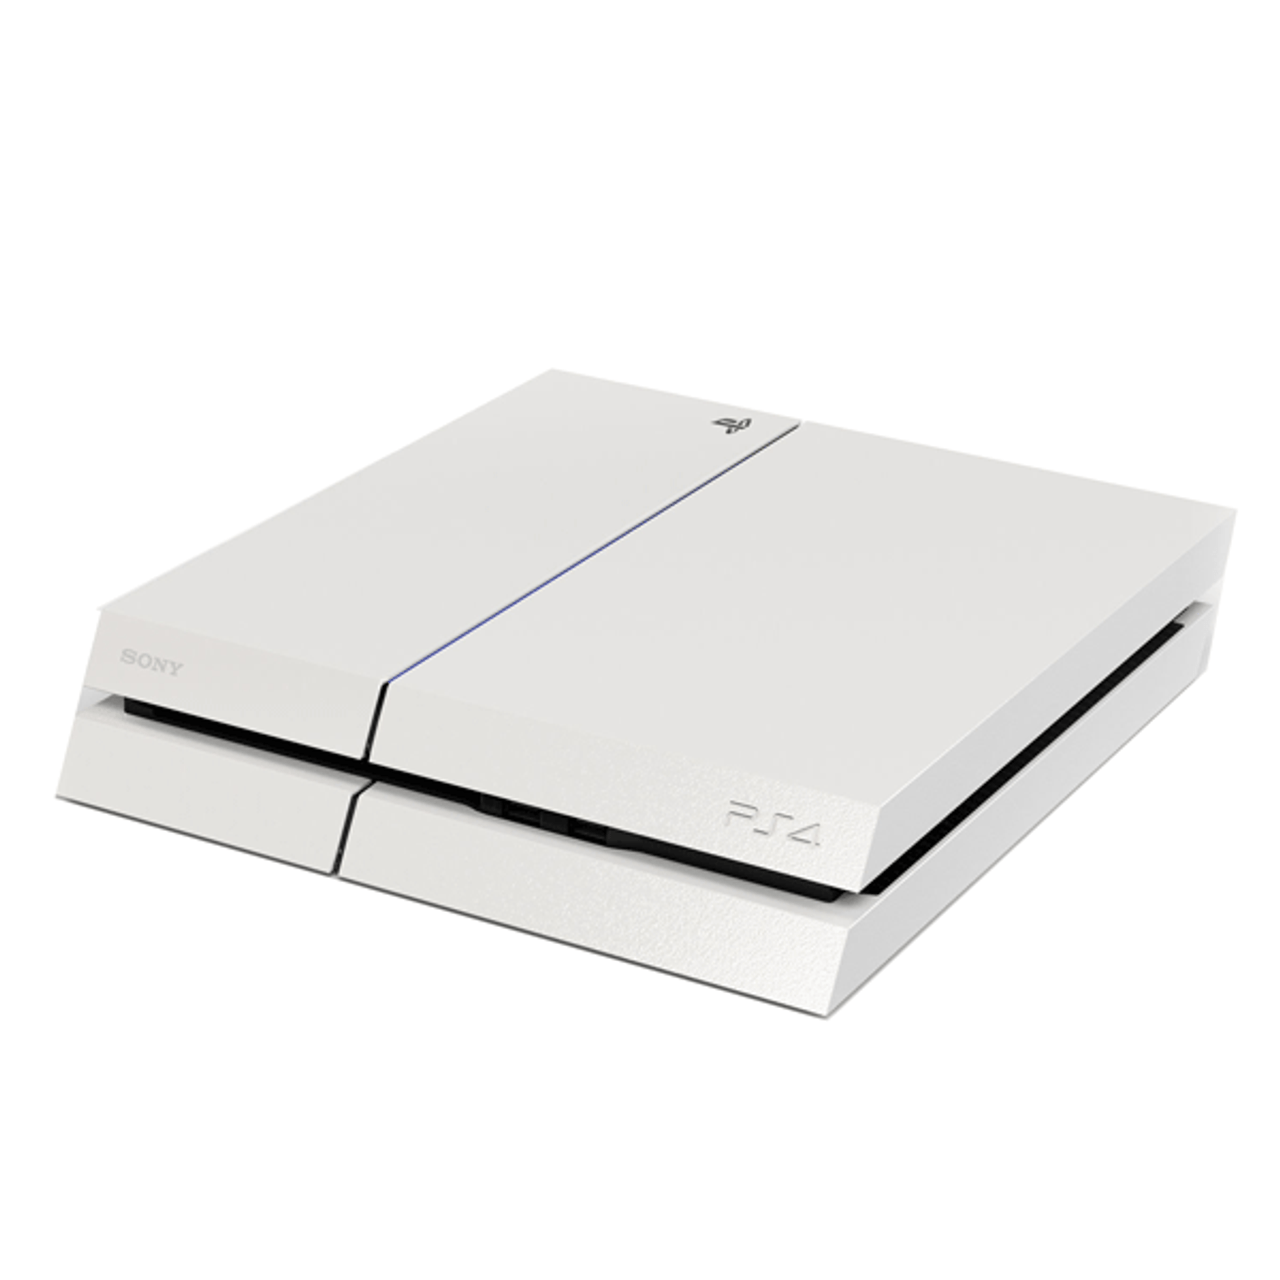 週間特売PlayStation4 ホワイト 500GB ps4 プレイステーション4(PS4)